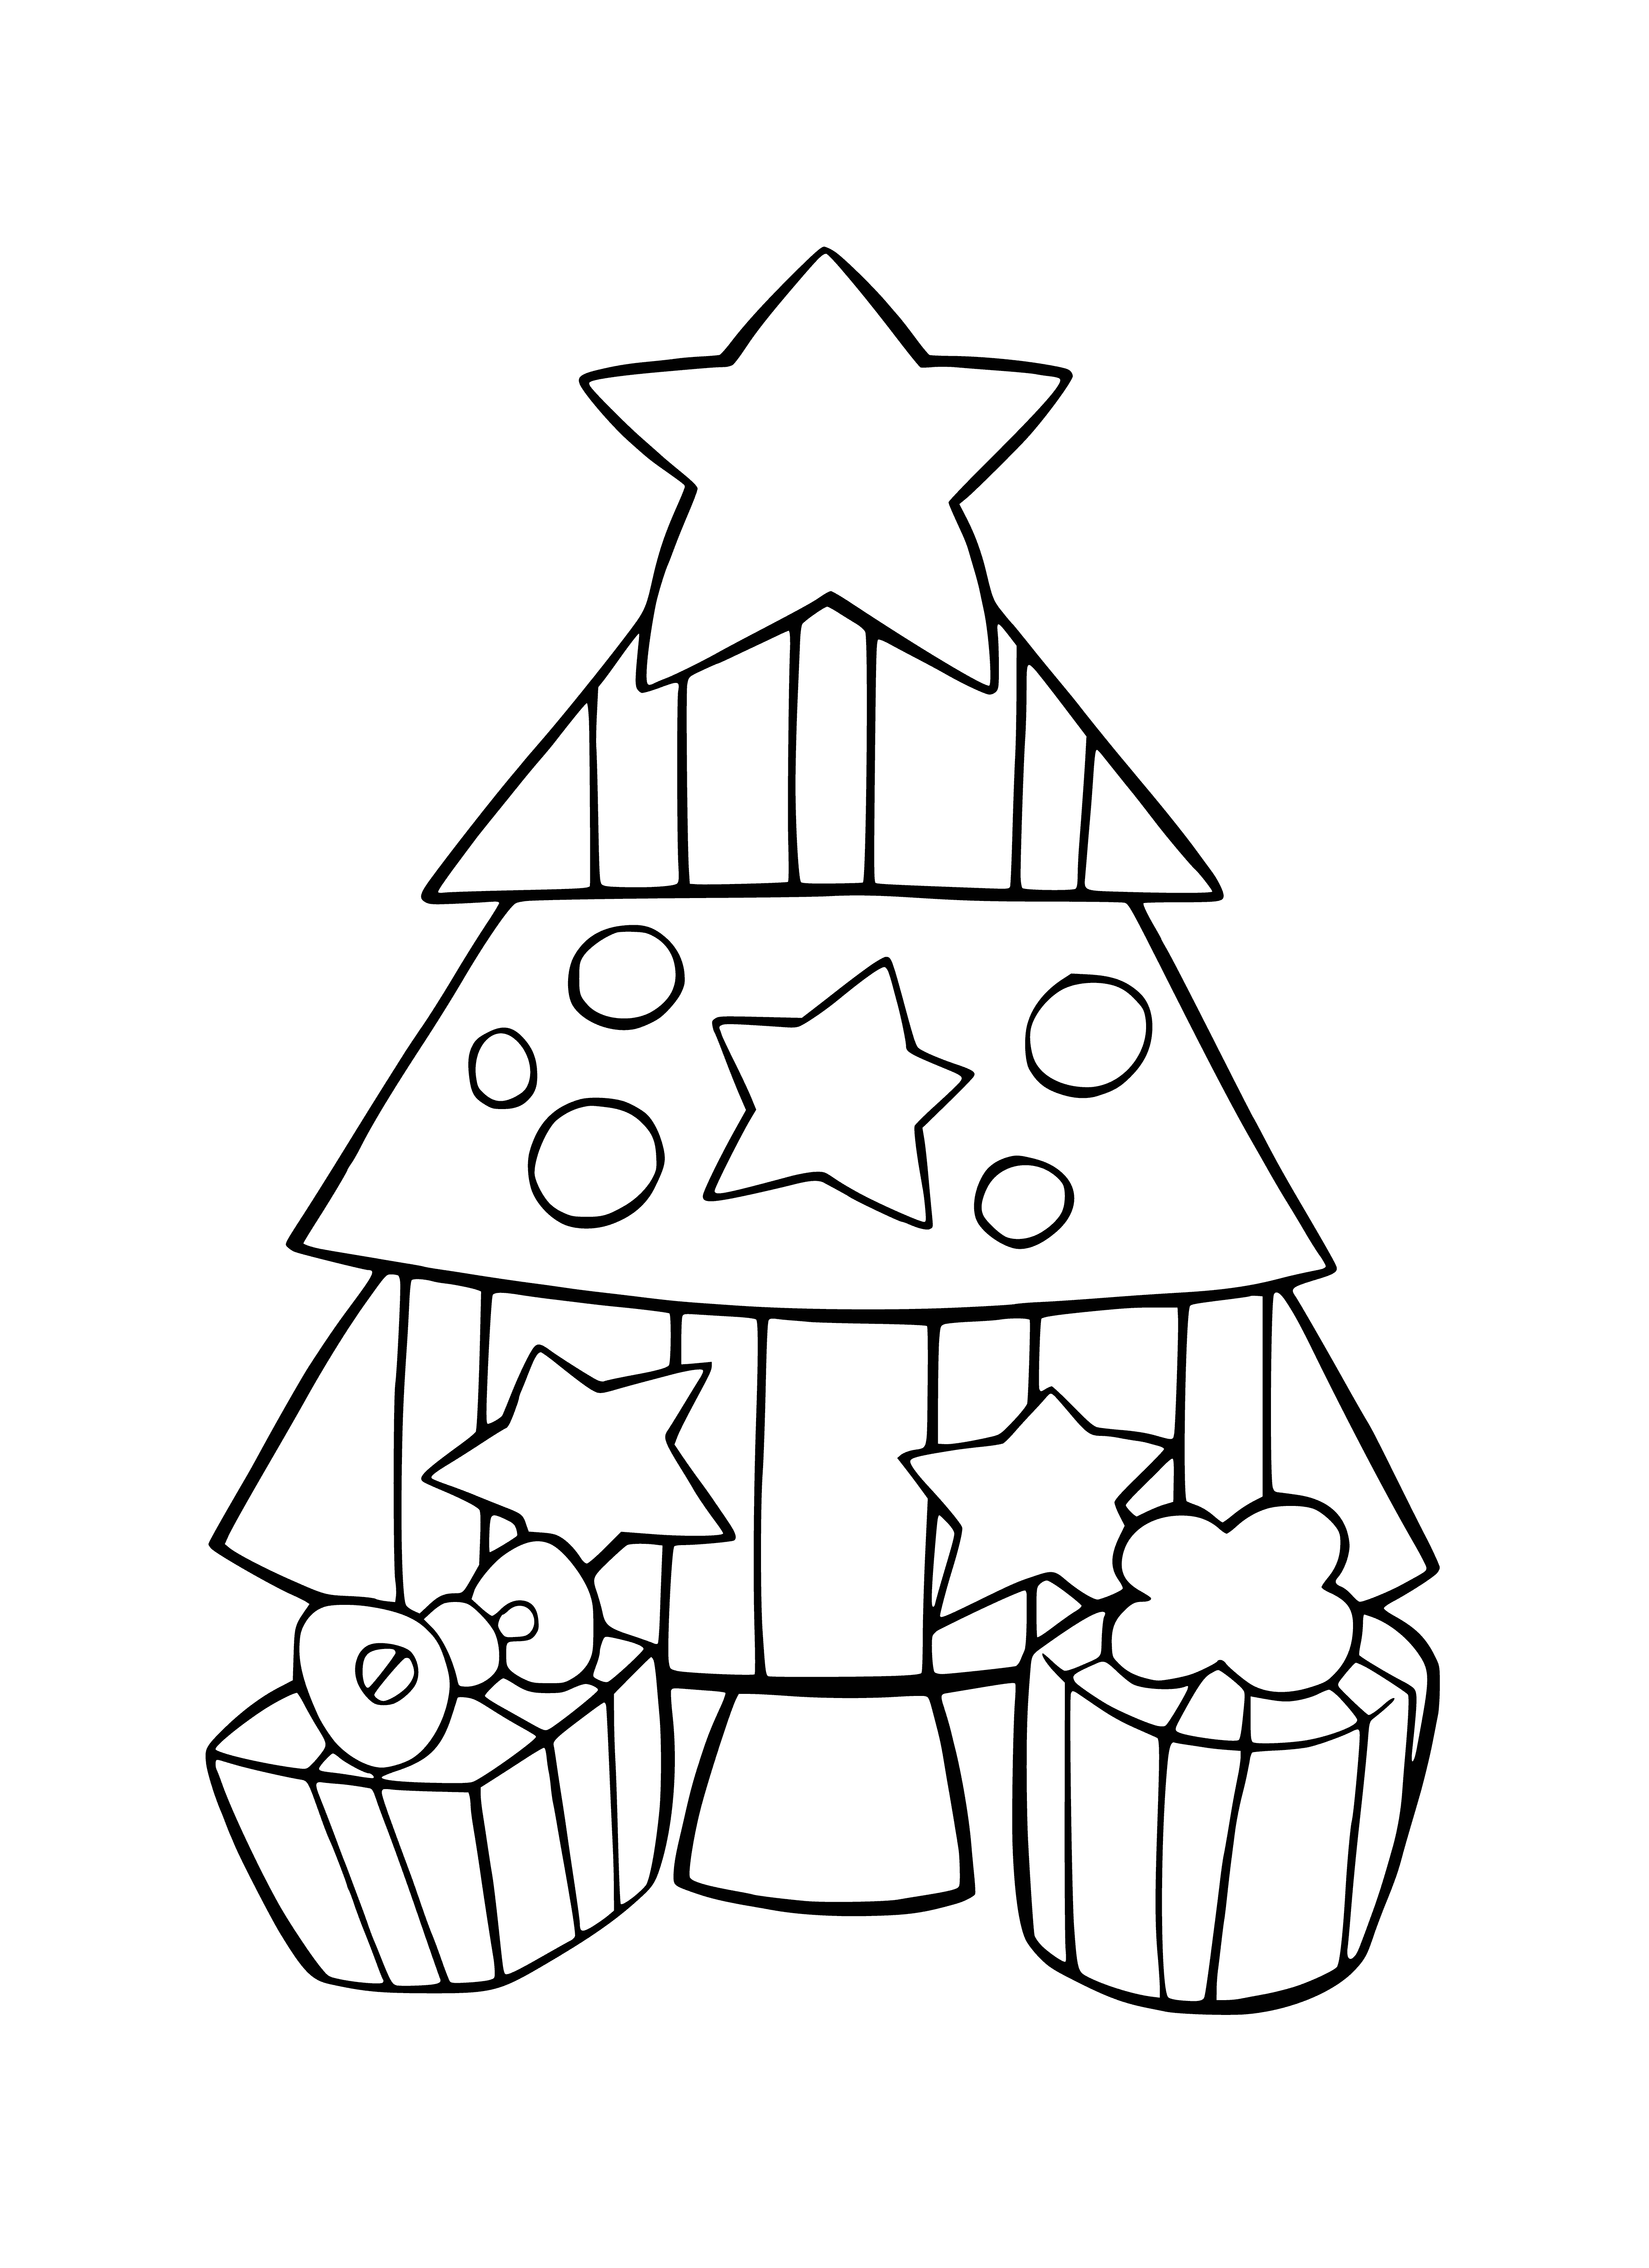 Weihnachtsbaum und Geschenke Malseite